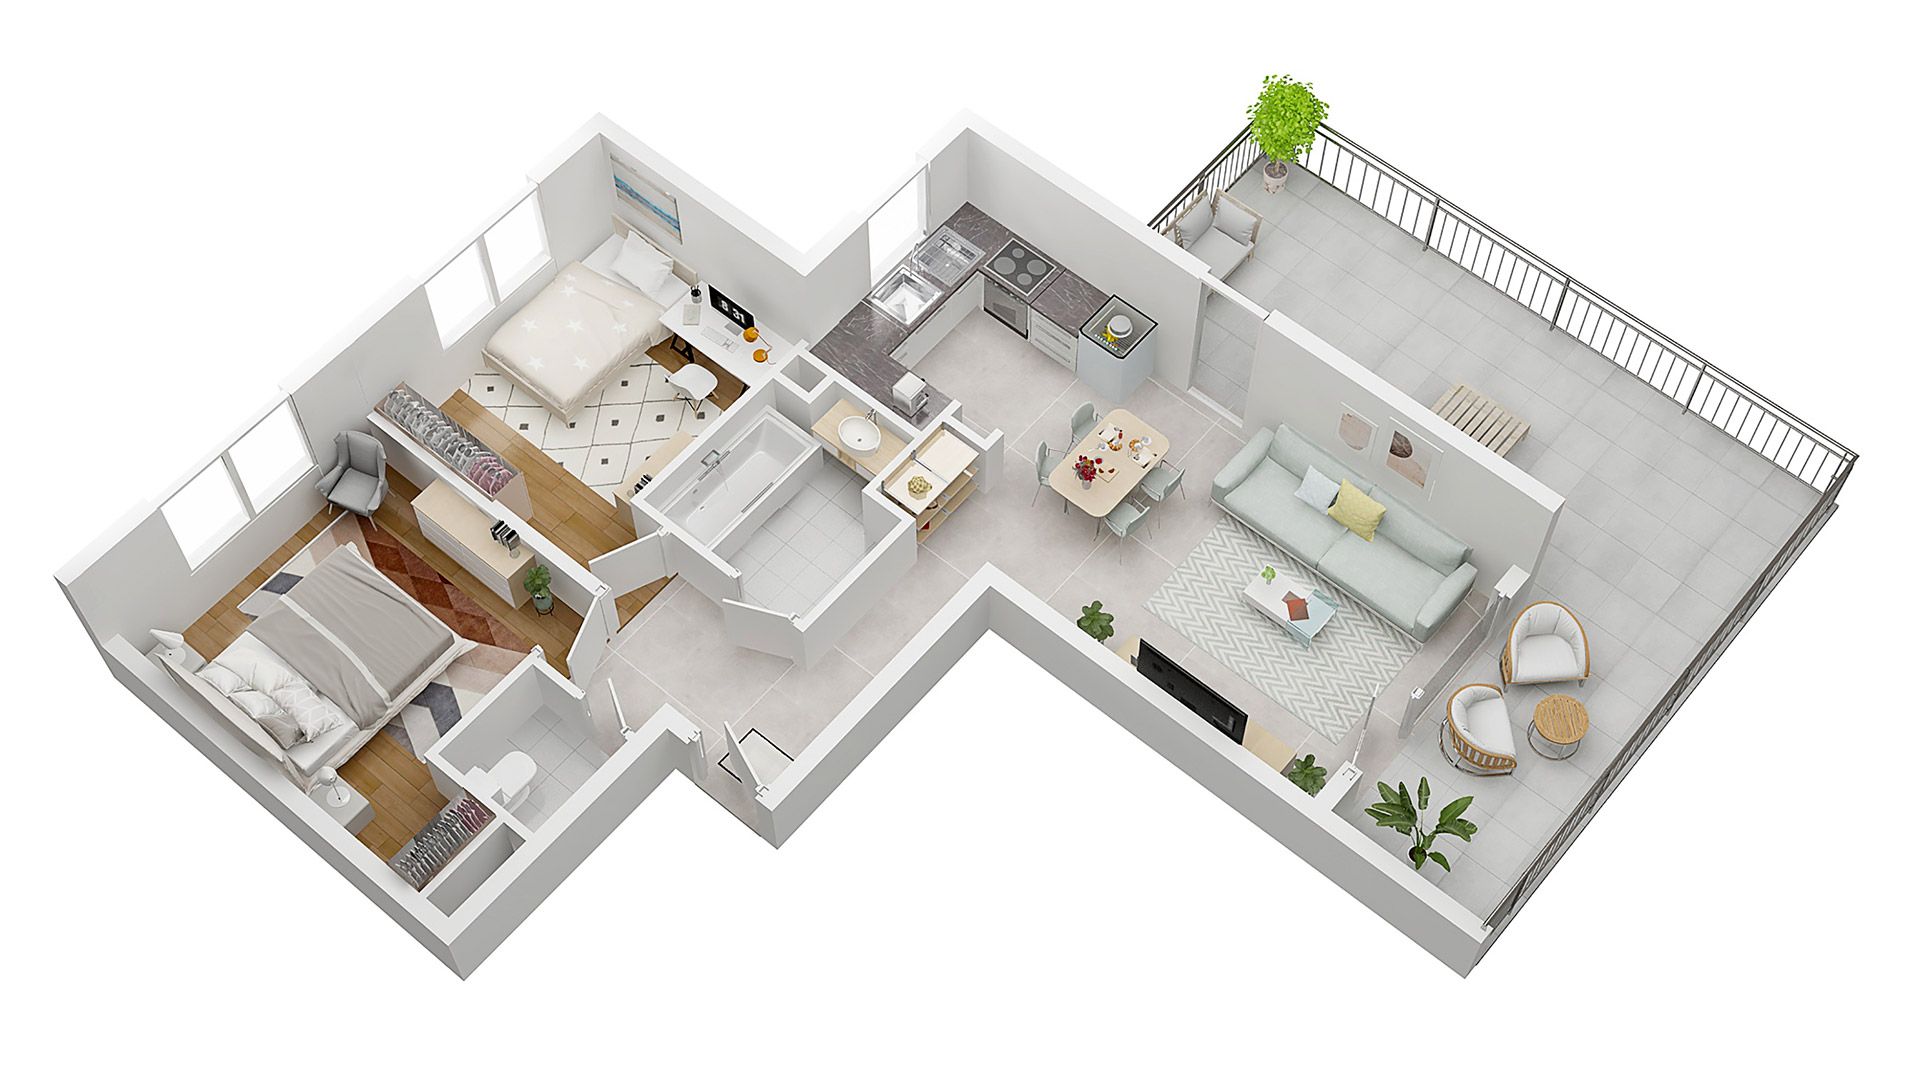 Concept Immobilier - Les Jardins d'Agathe - Appartements neufs à Florange - Axonométrie d'un appartement de type T3